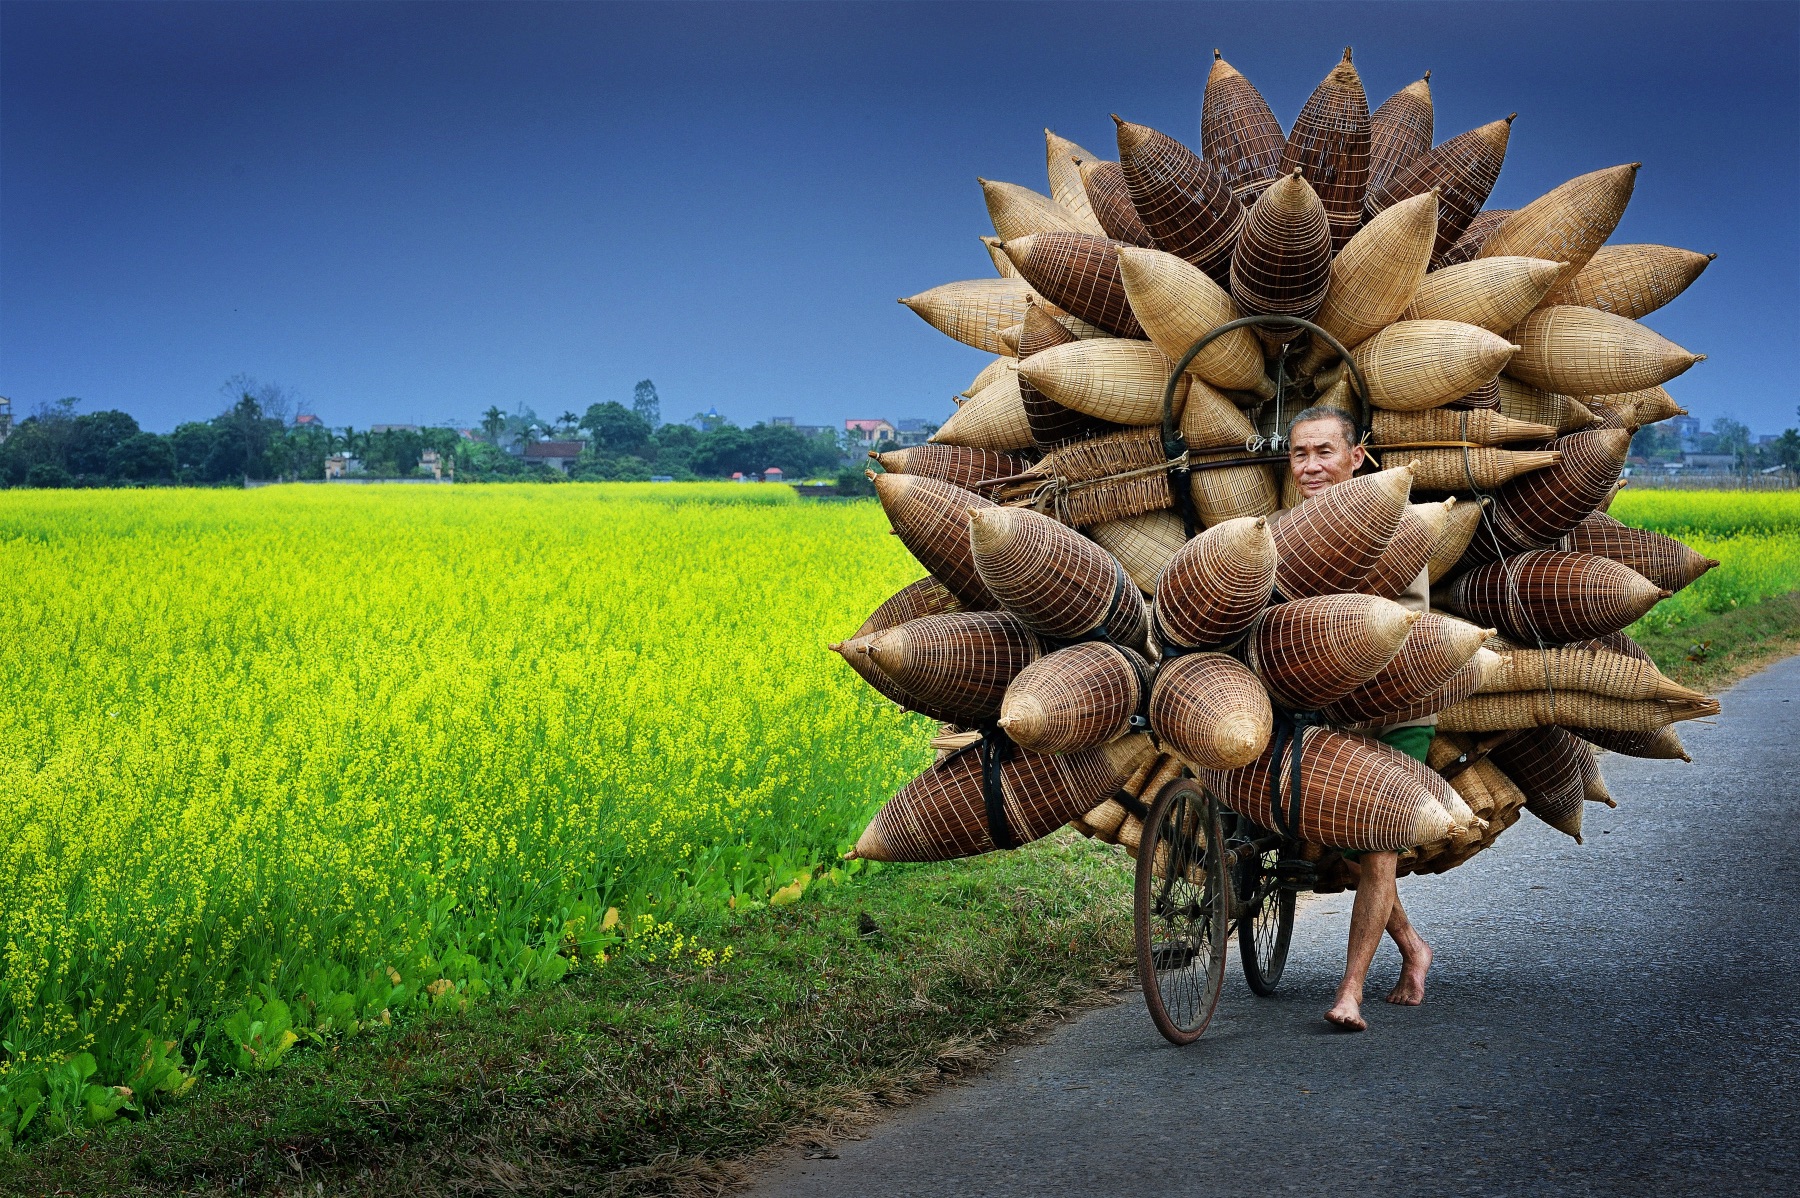 На фотографии, сделанной Ли Хоанг Лонгом, изображён мужчина, продающий бамбуковые корзины на своём велосипеде в Ханое.